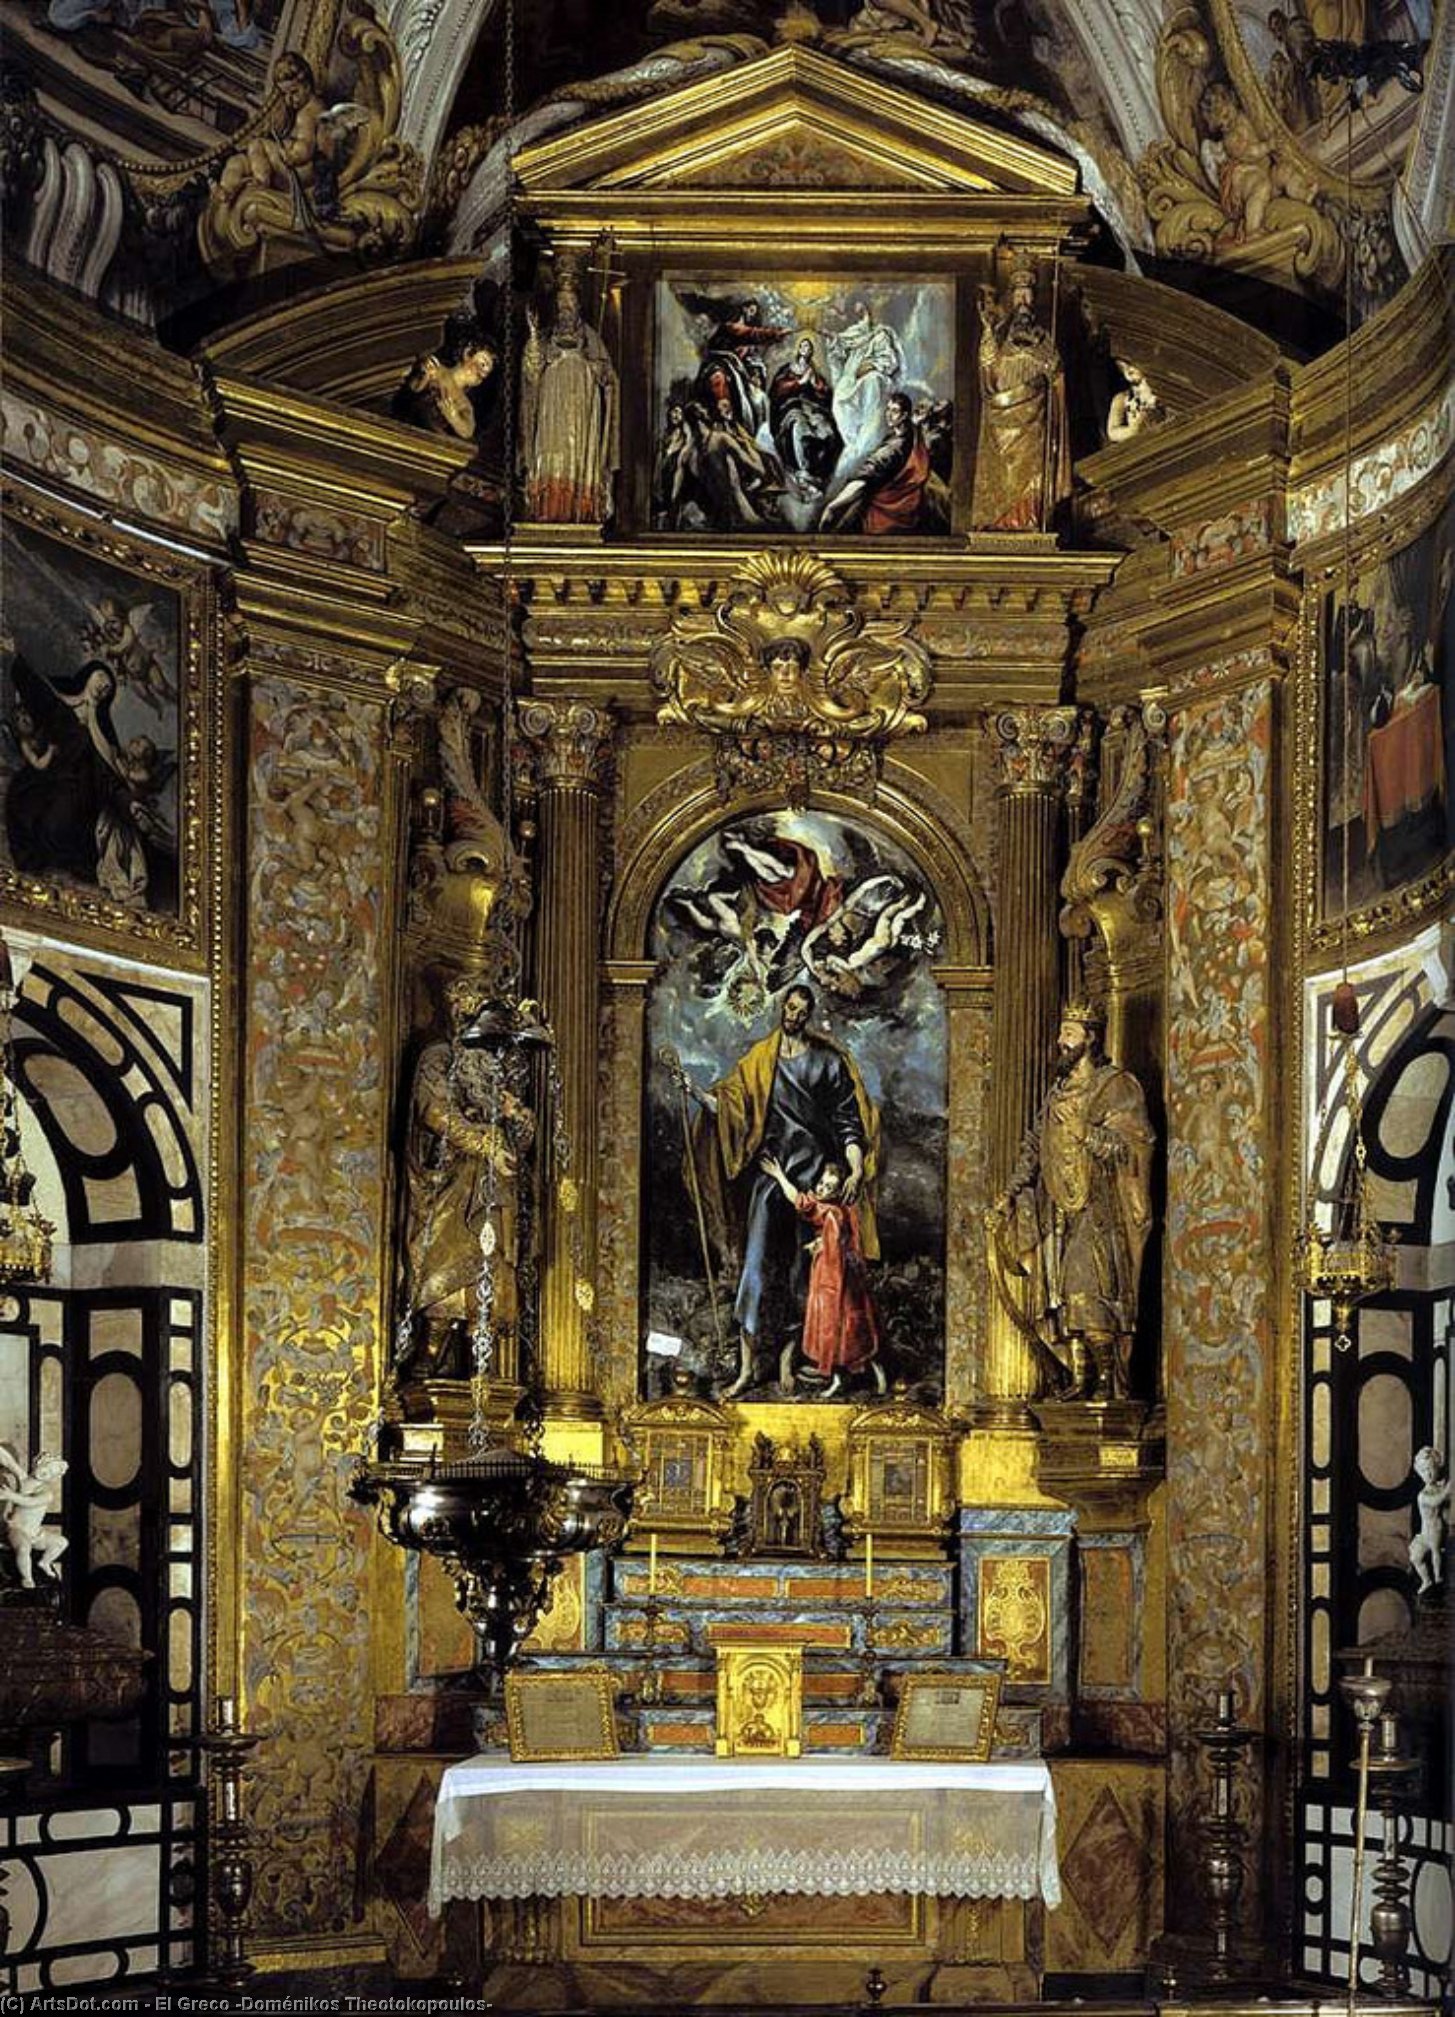 WikiOO.org - Encyclopedia of Fine Arts - Malba, Artwork El Greco (Doménikos Theotokopoulos) - Altarpiece